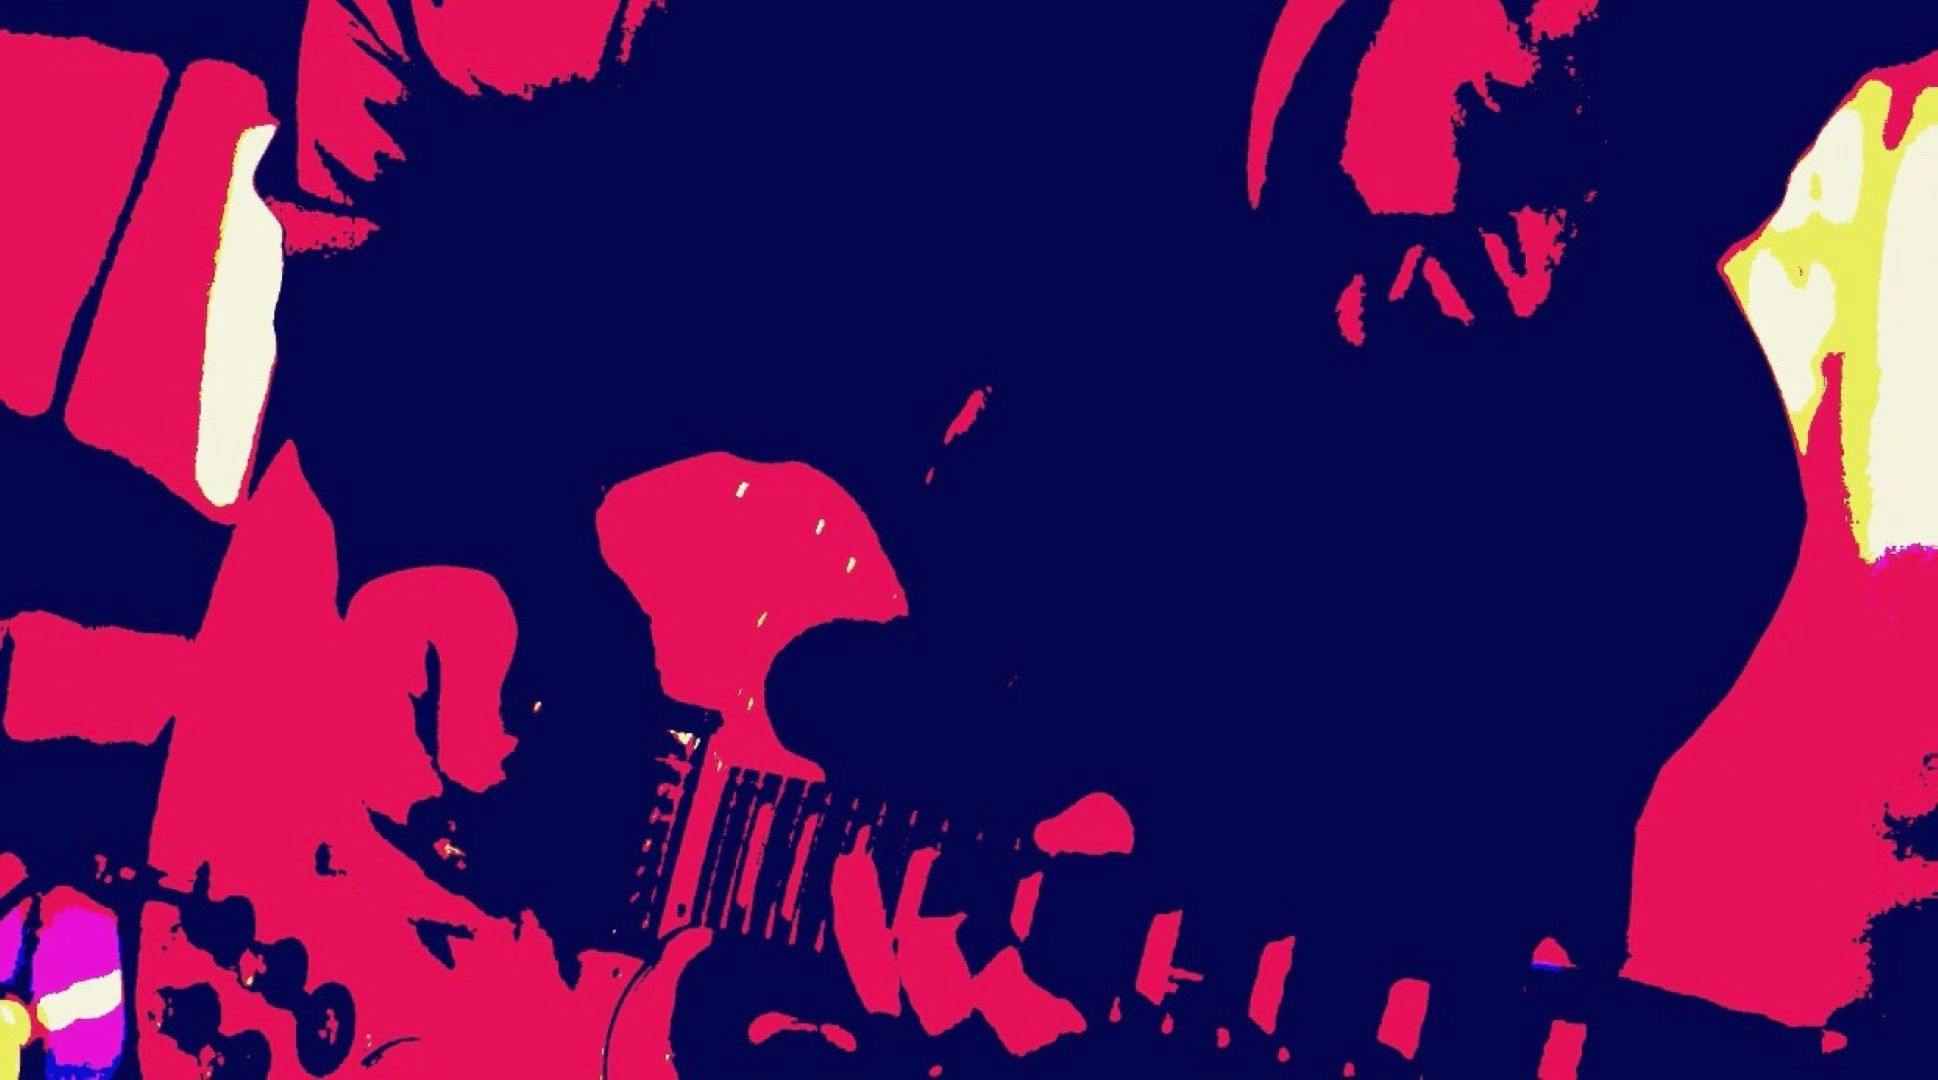 John Pagano Band - Make You Shout [Official Video] Banner Image